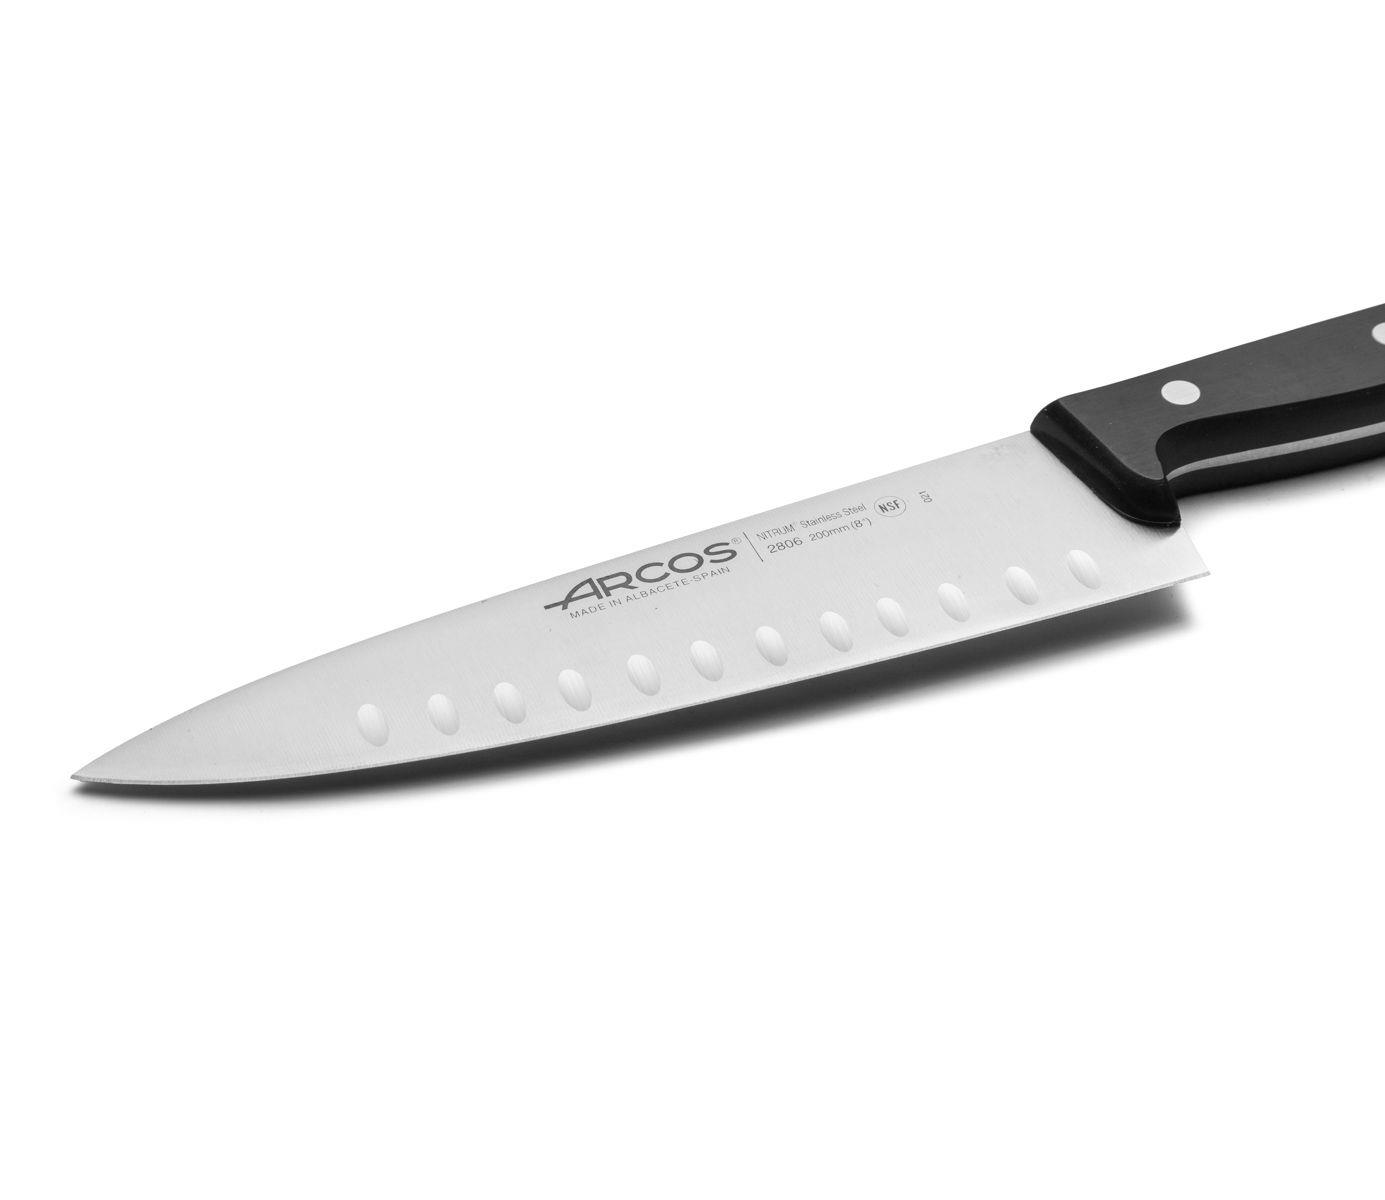 סכין שף - ארקוס דגם 2806-021